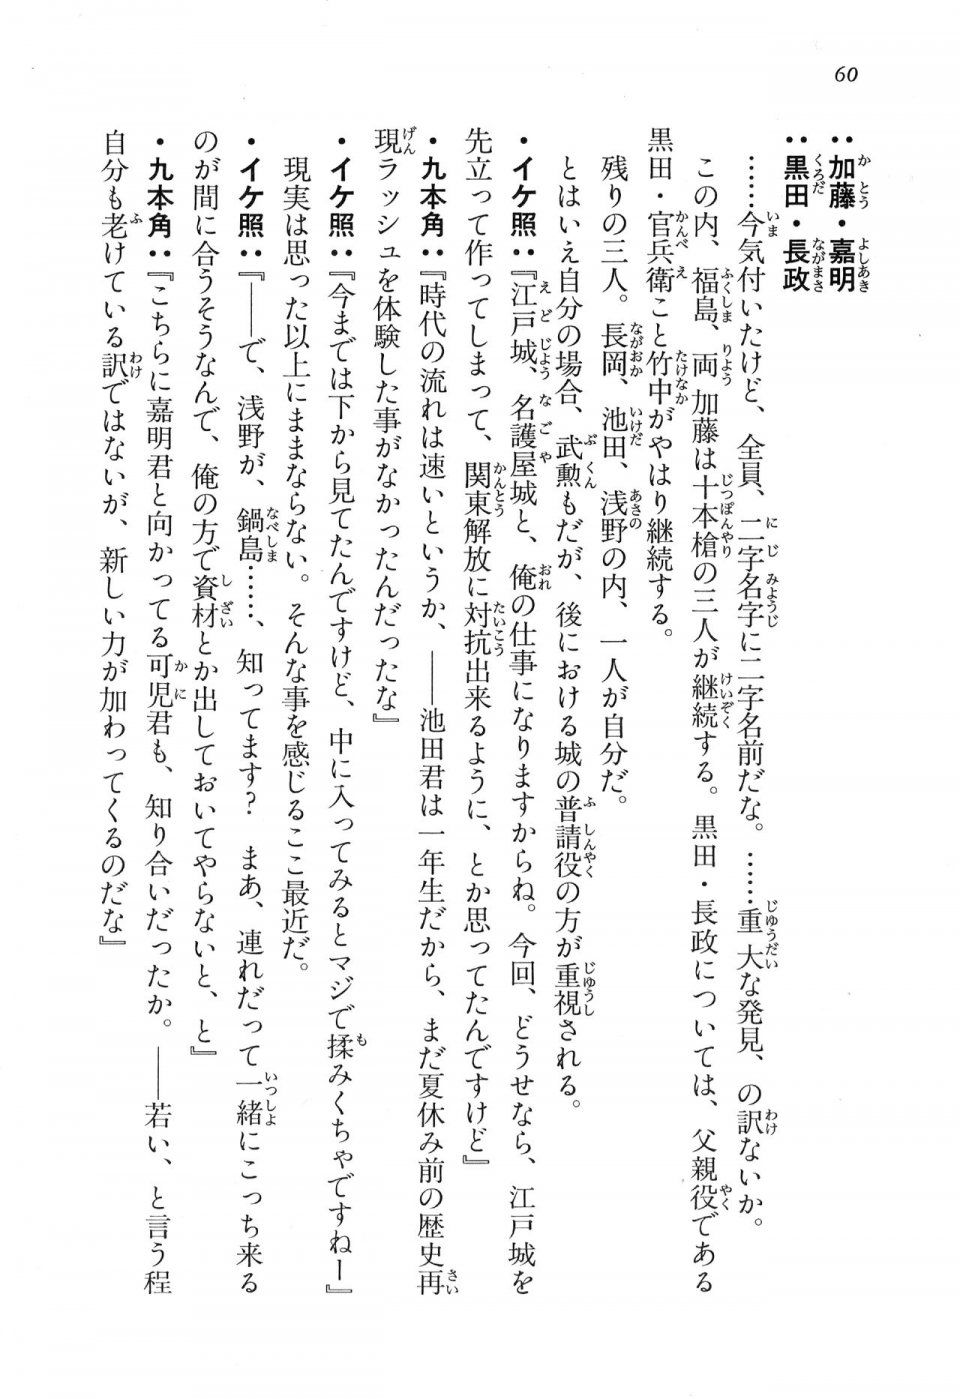 Kyoukai Senjou no Horizon LN Vol 16(7A) - Photo #60